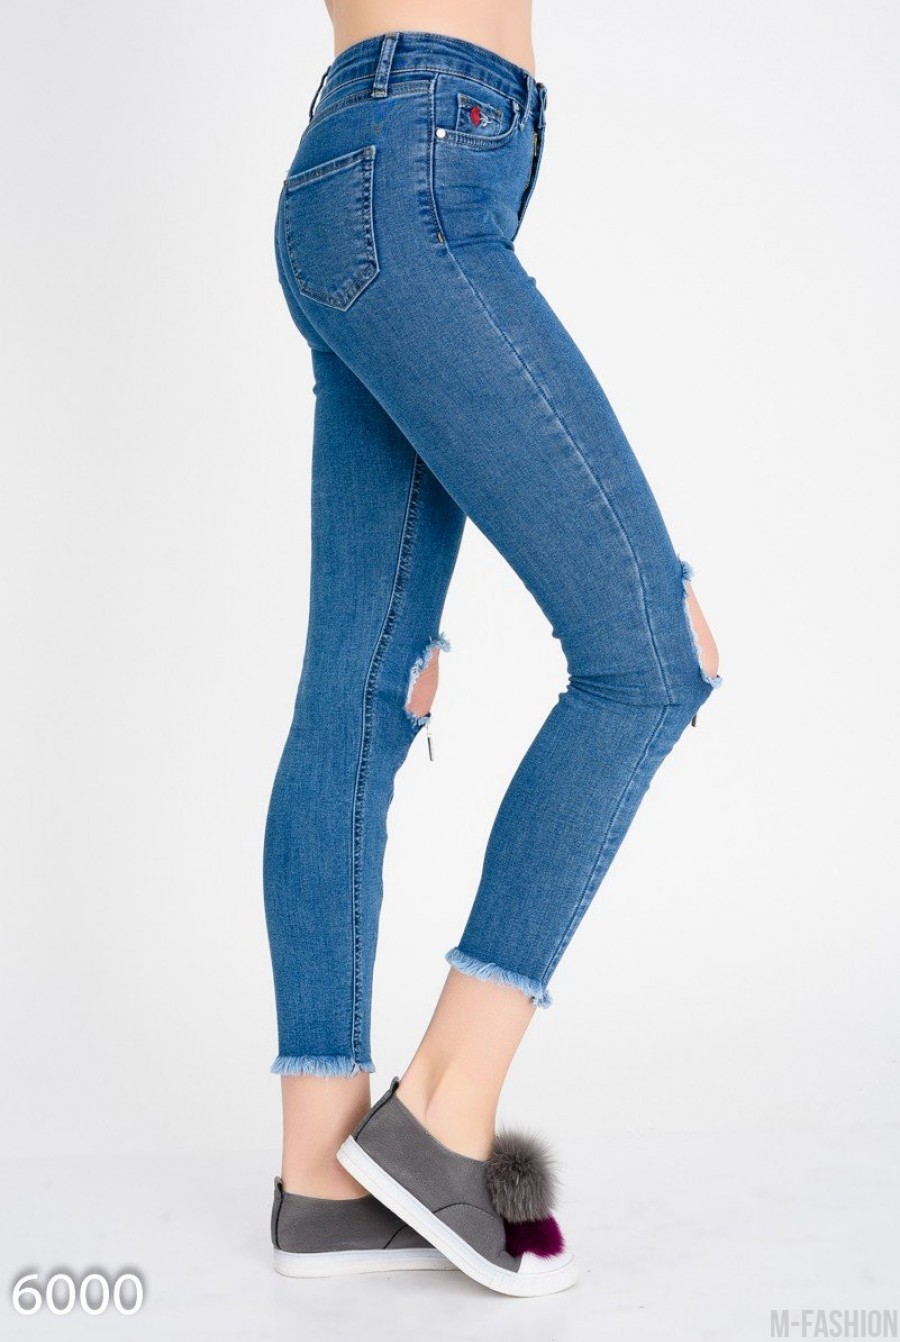 Короткие узкие джинсы с крупными дырками на коленях- Фото 2